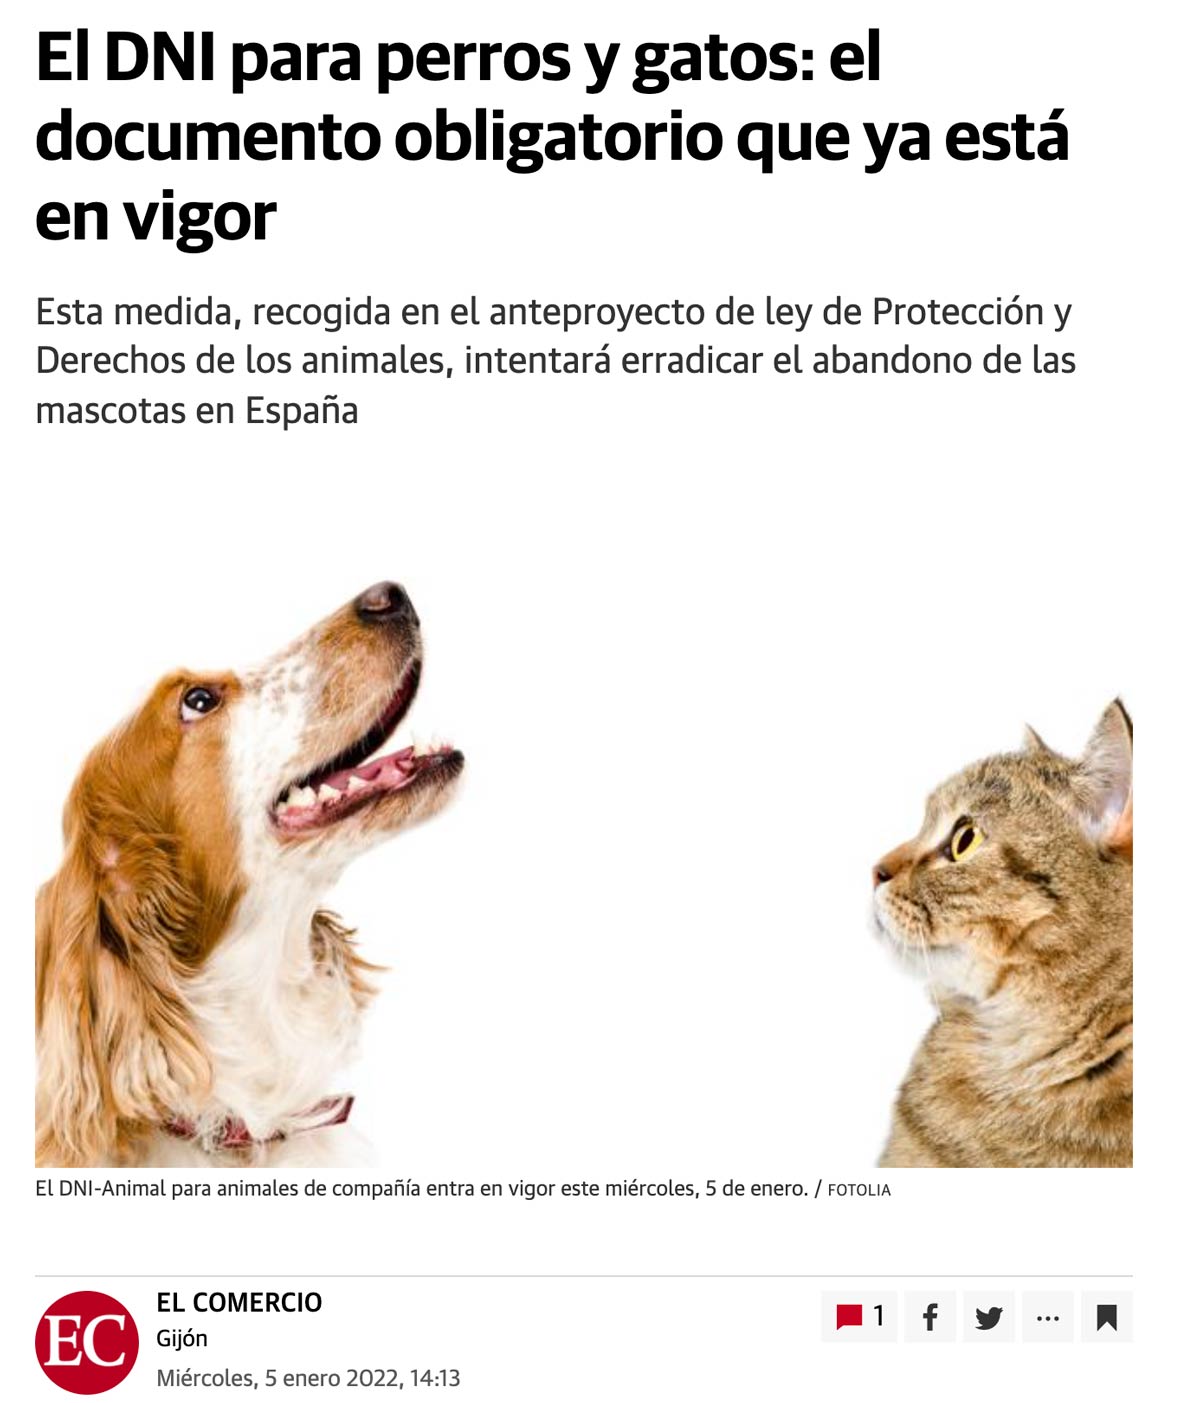 No, el 5 de enero 2022 NO ha entrado en vigor el para perros y gatos en España